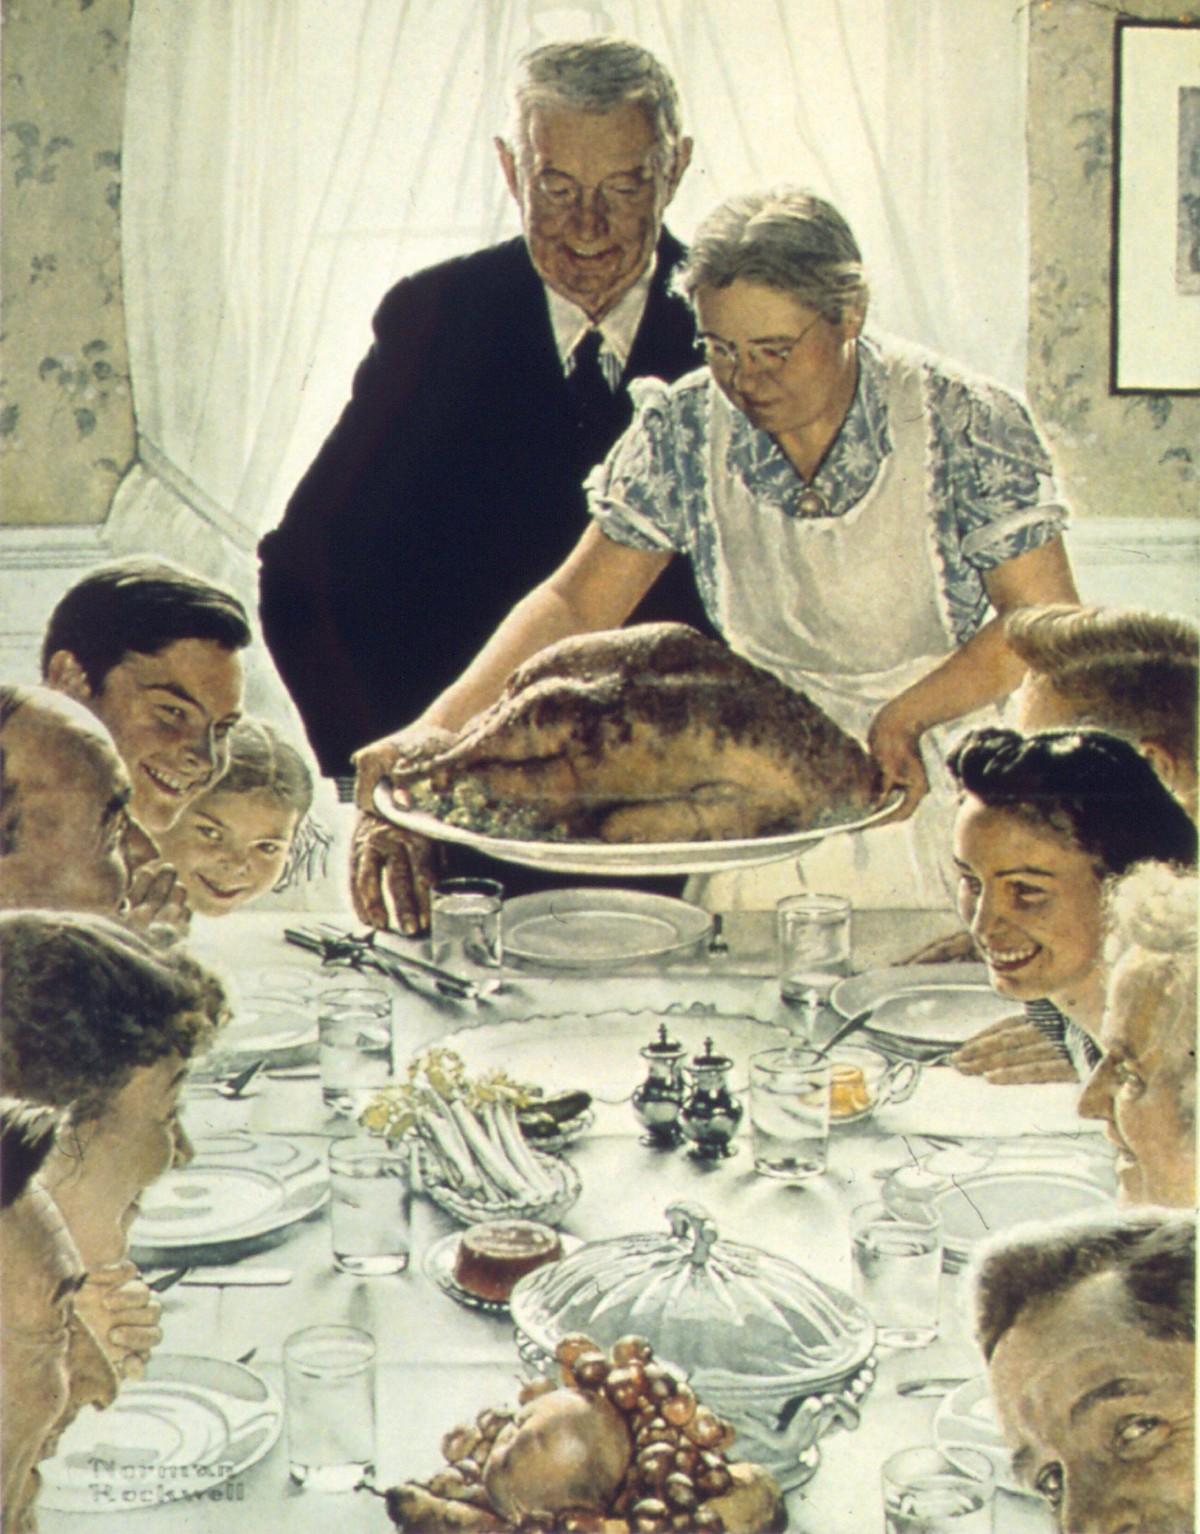 Image d'un repas de famille. La mère apporte une dinde sur un plat